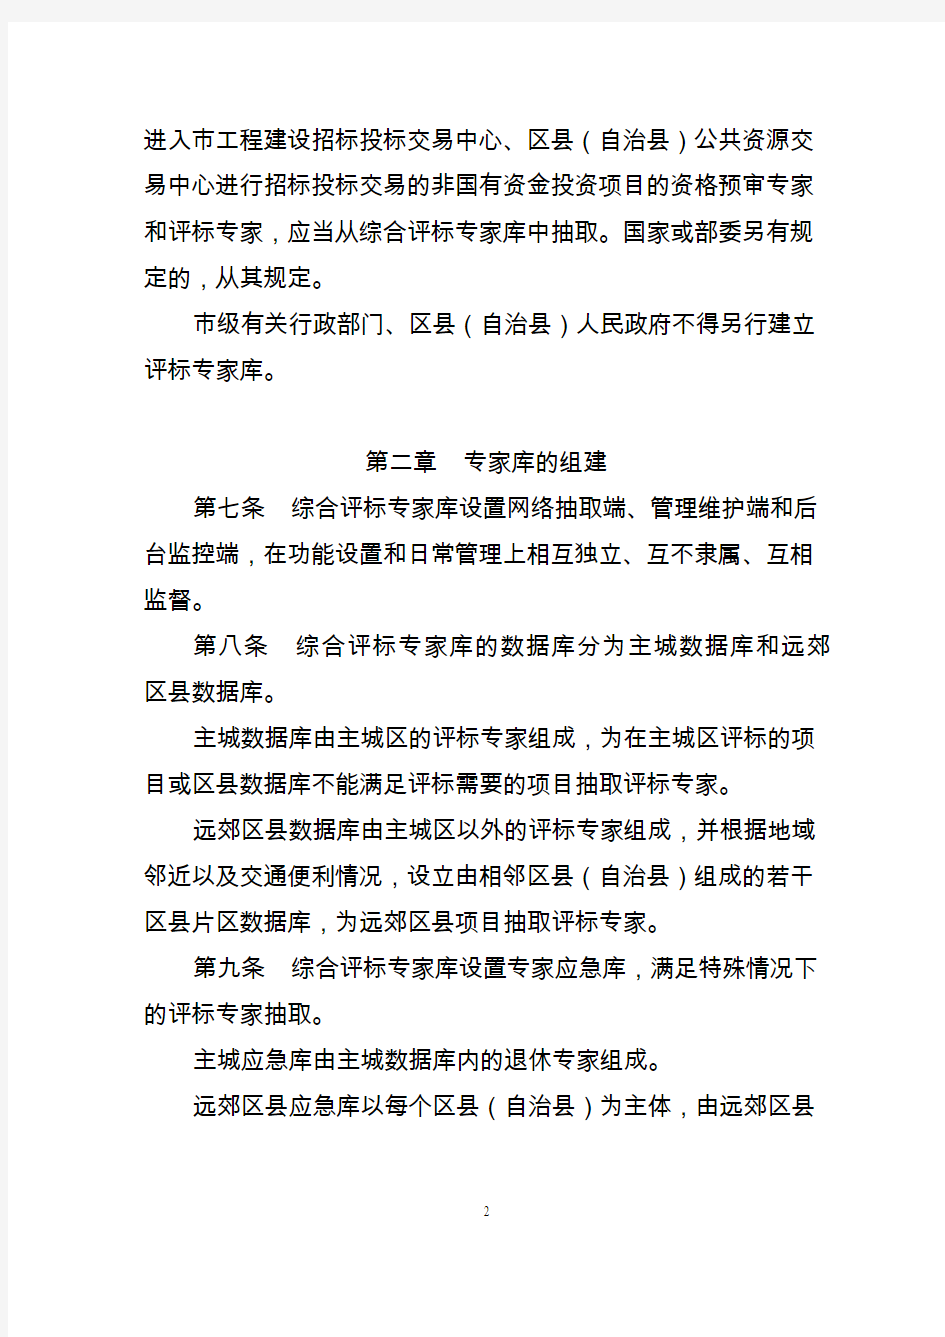 重庆市综合评标专家库和评标专家管理办法